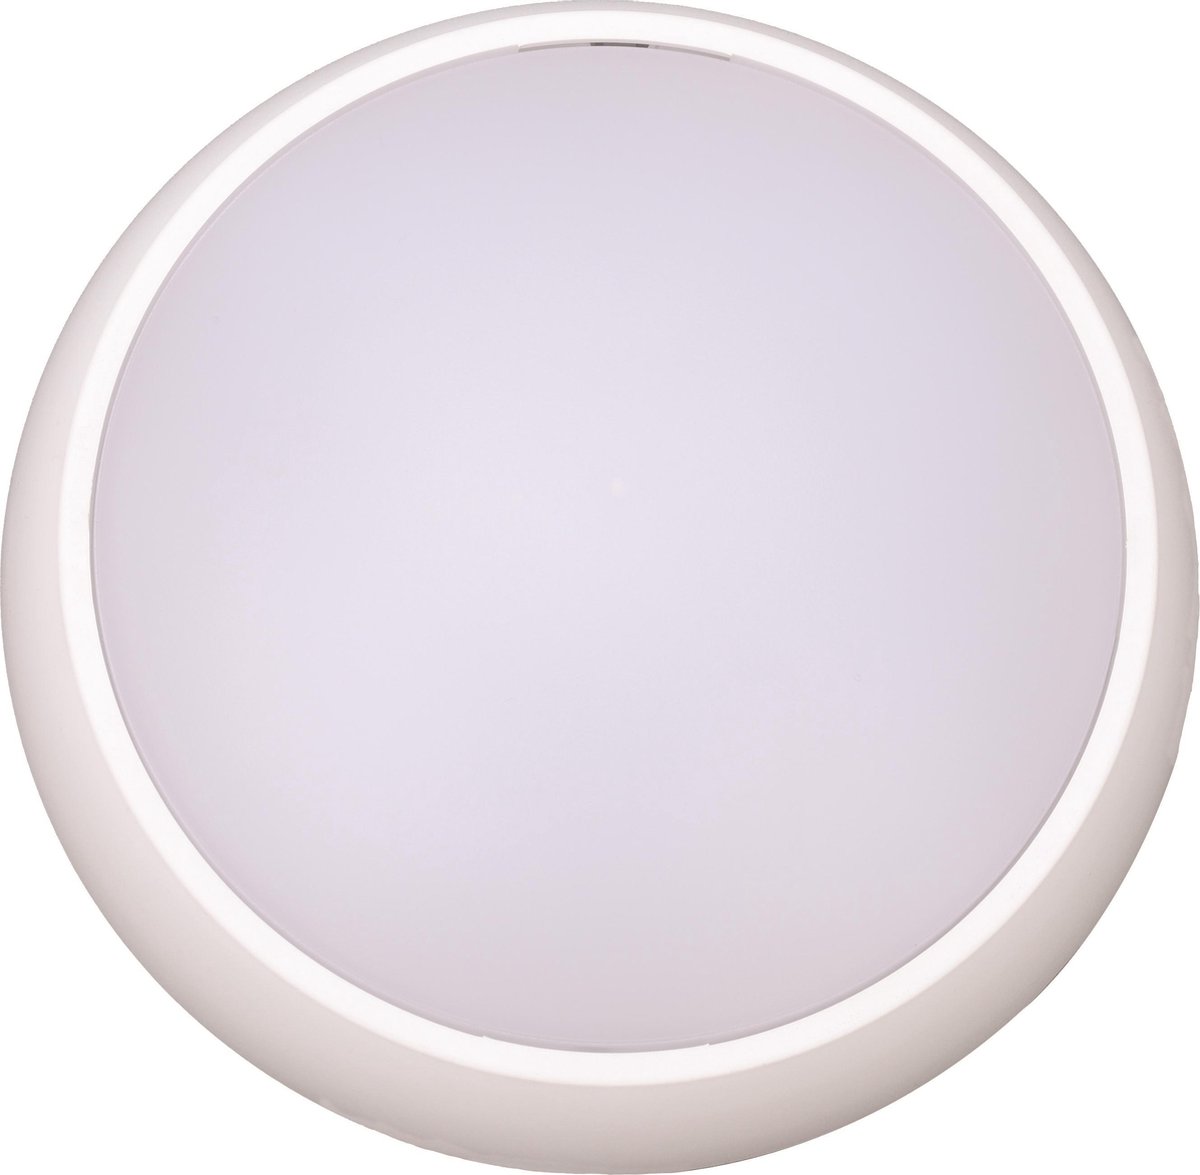 Prilux “Masne” Wandlamp LED | 15W - 1087lm - 3000K | voor binnen en buiten | kleur wit